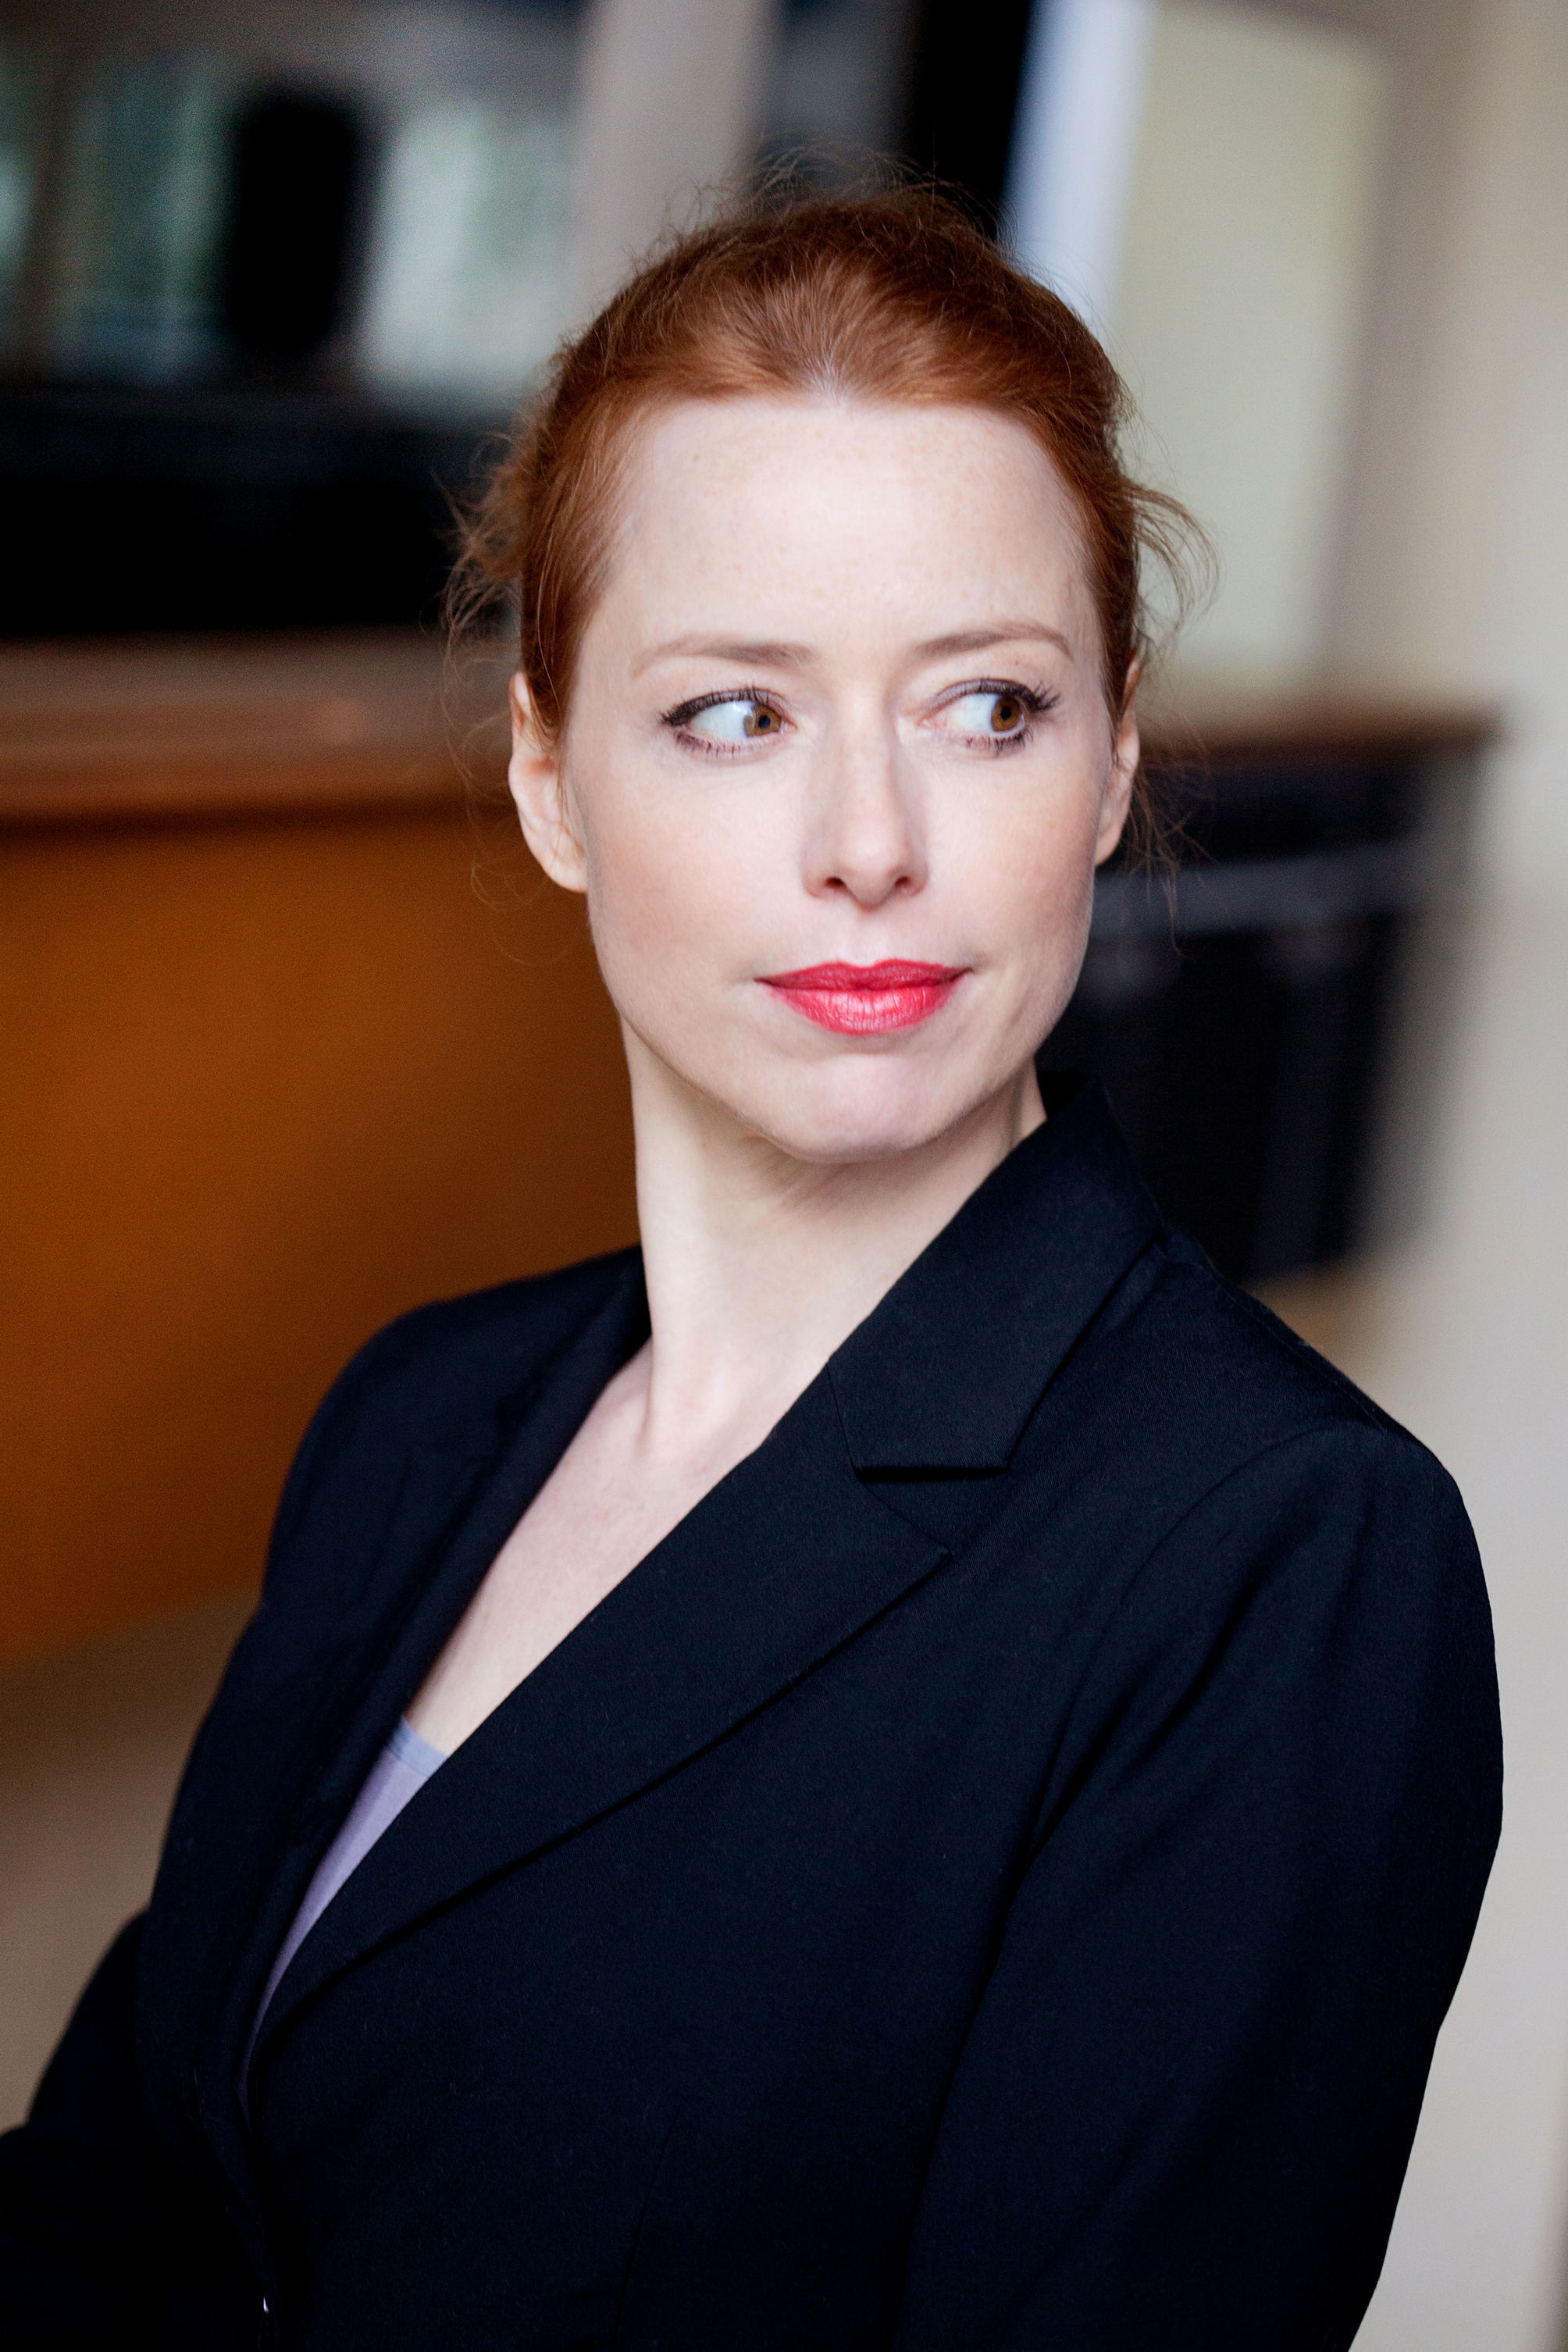 Sonja Kerskes